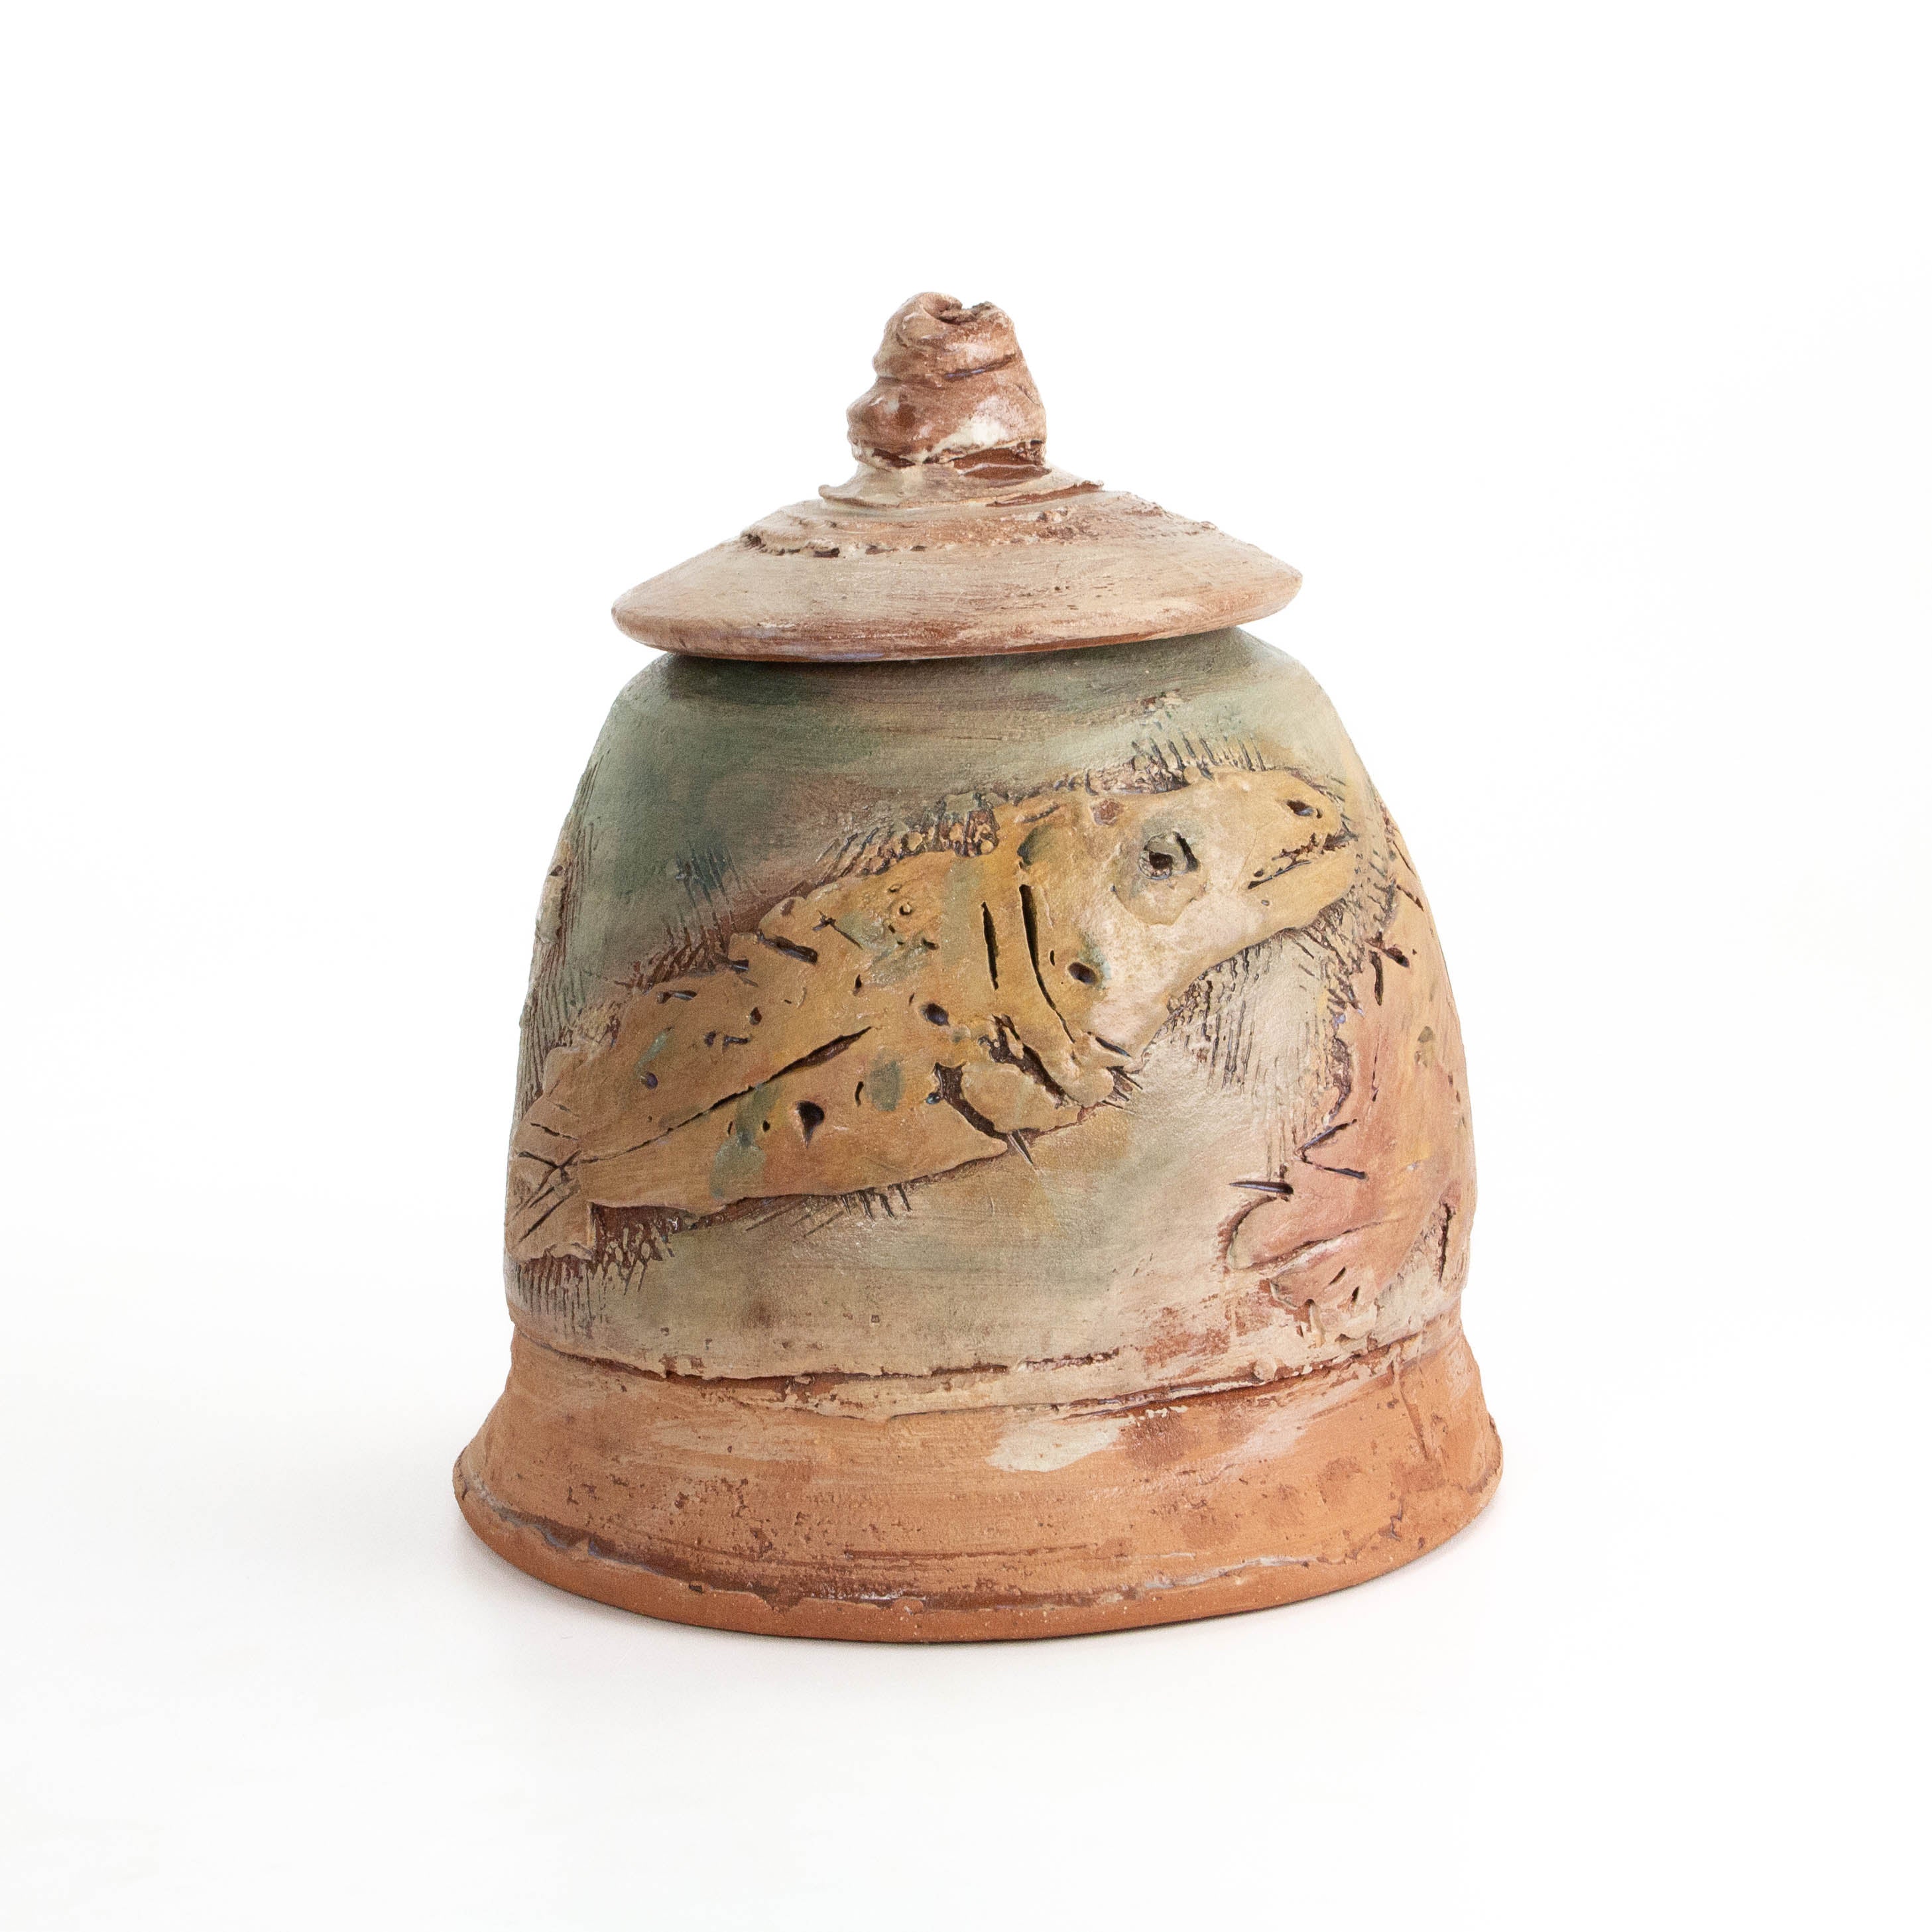 Carved Lidded Jar: Fish